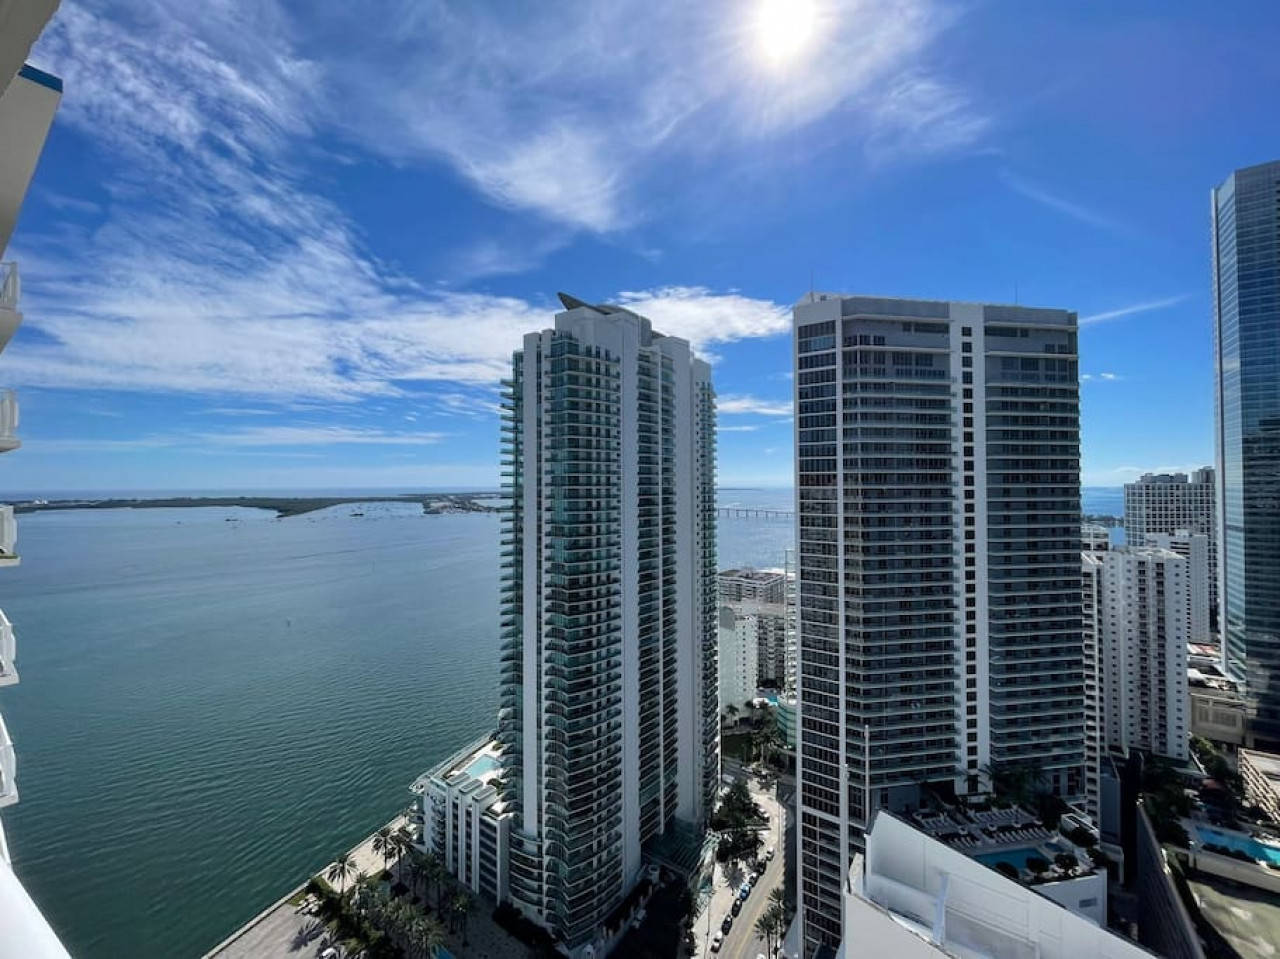 Miami Vacation Rental